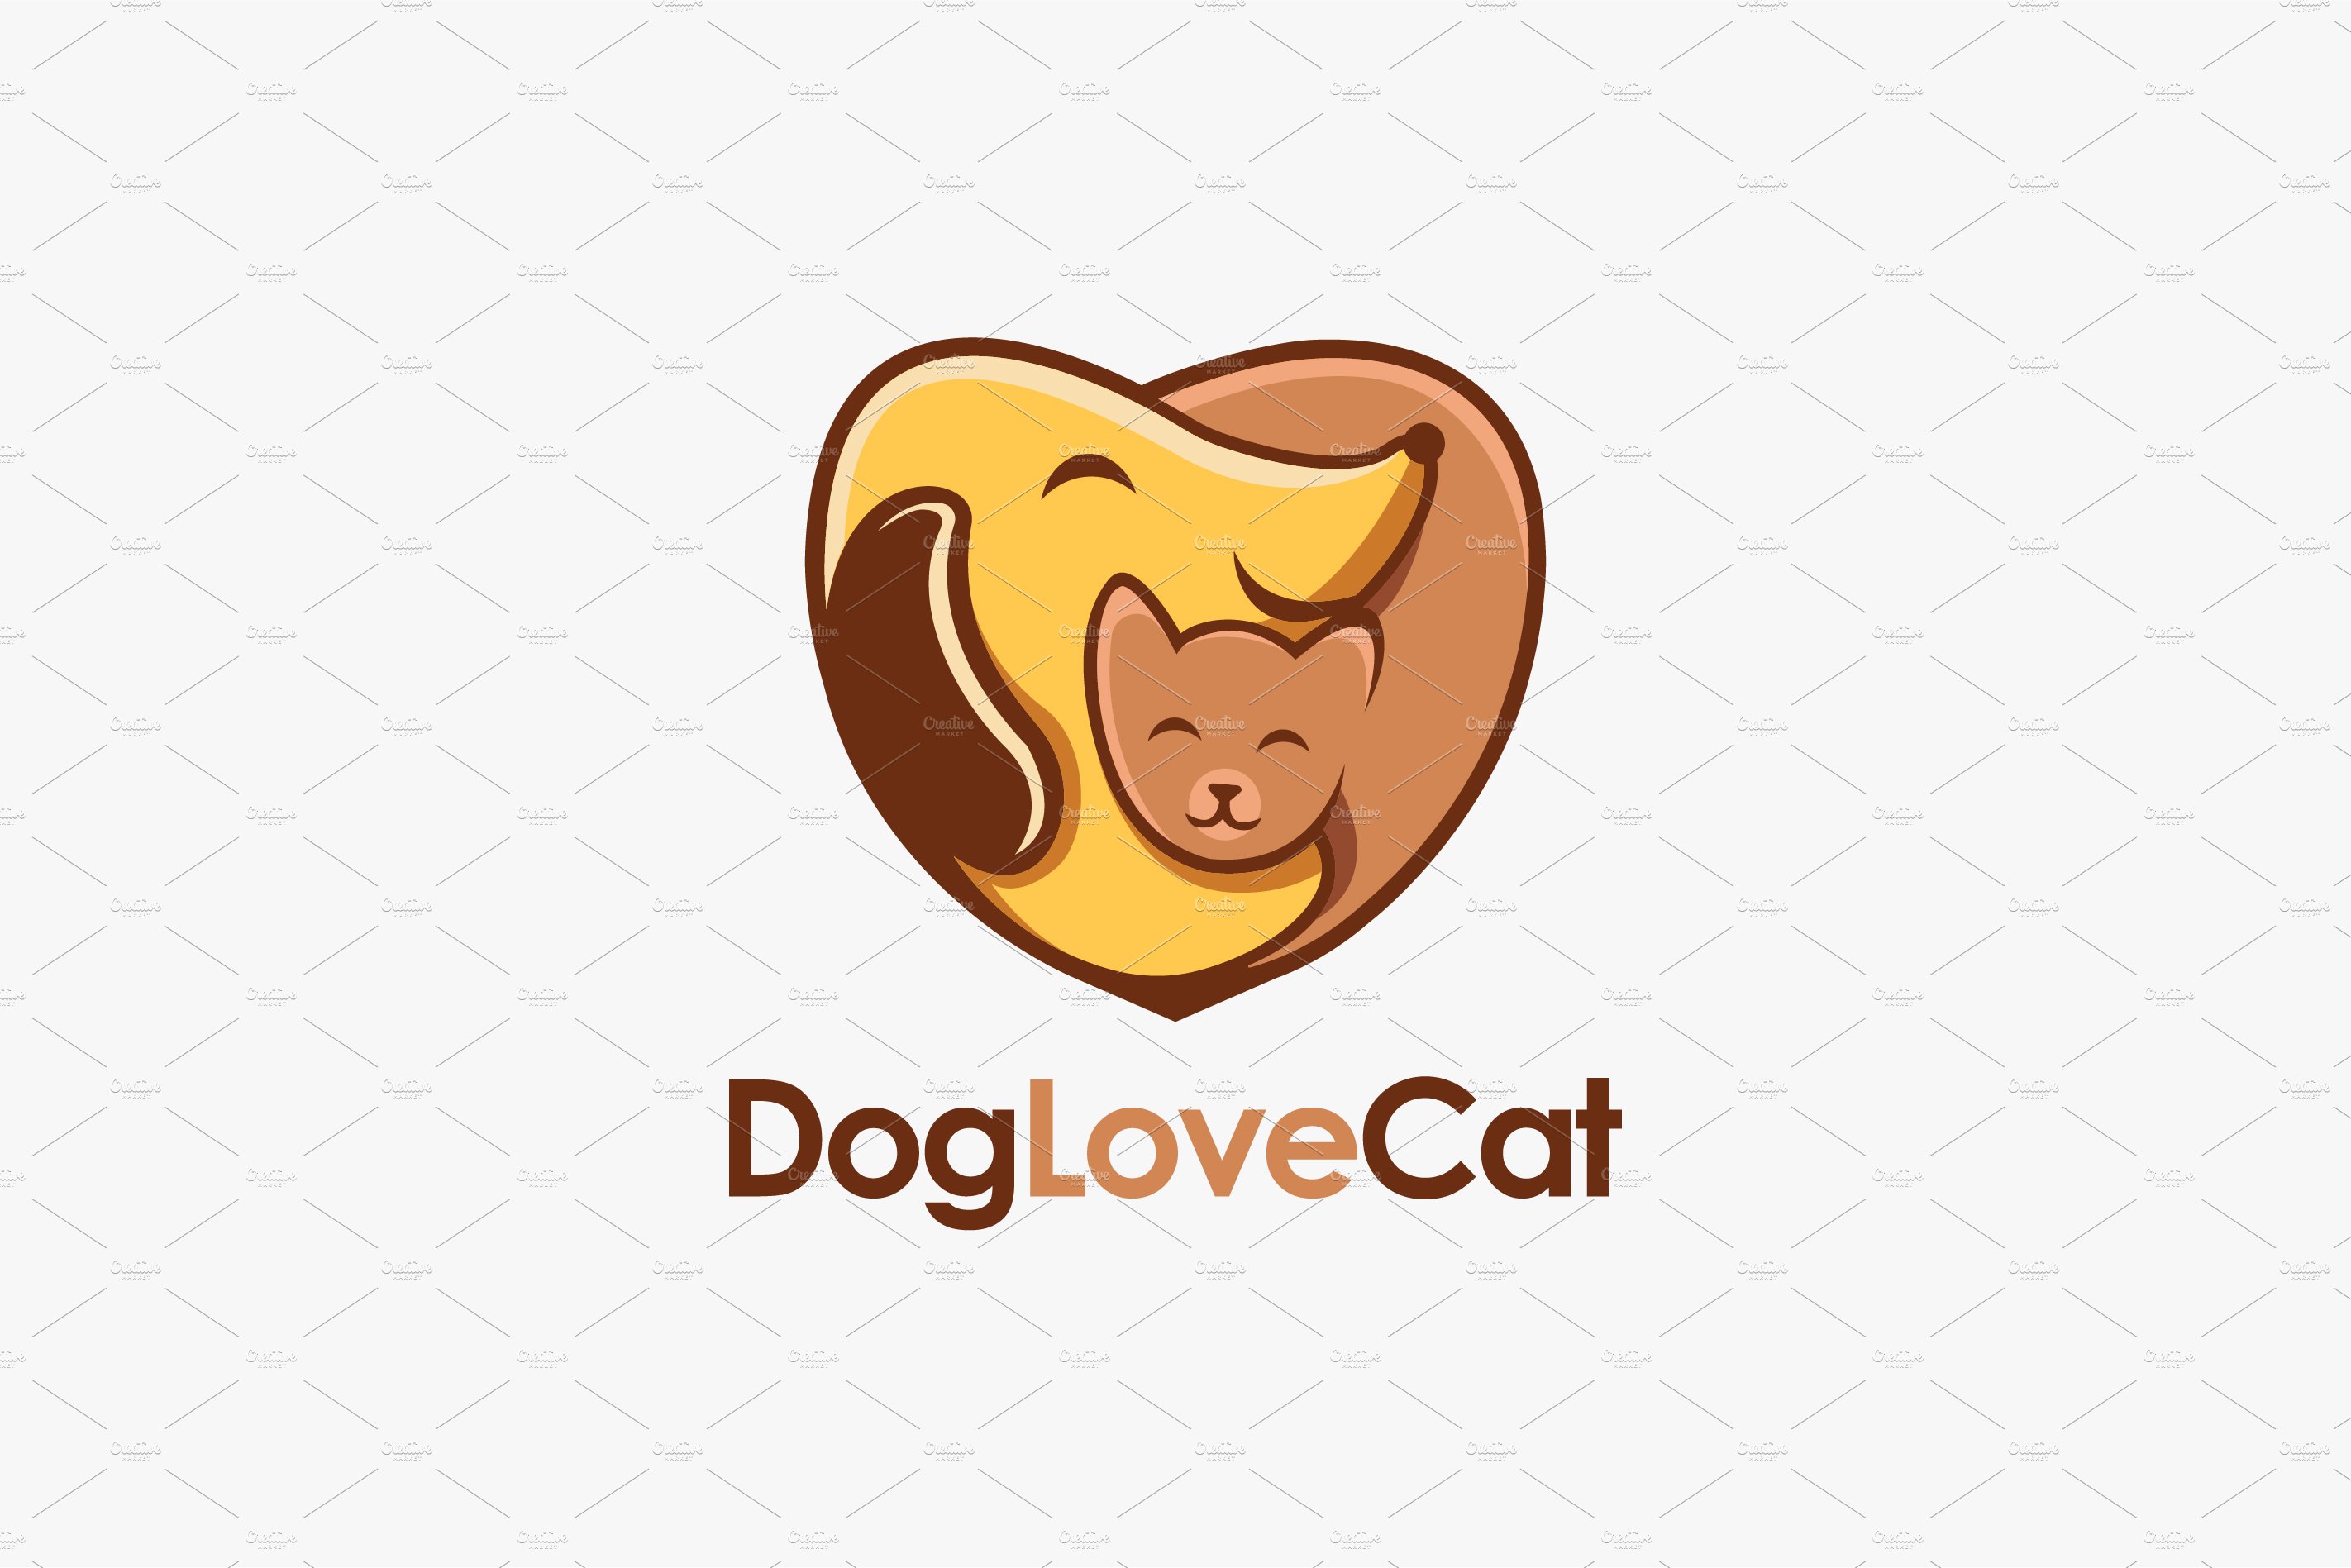 Dog hugging cat logo cover image.